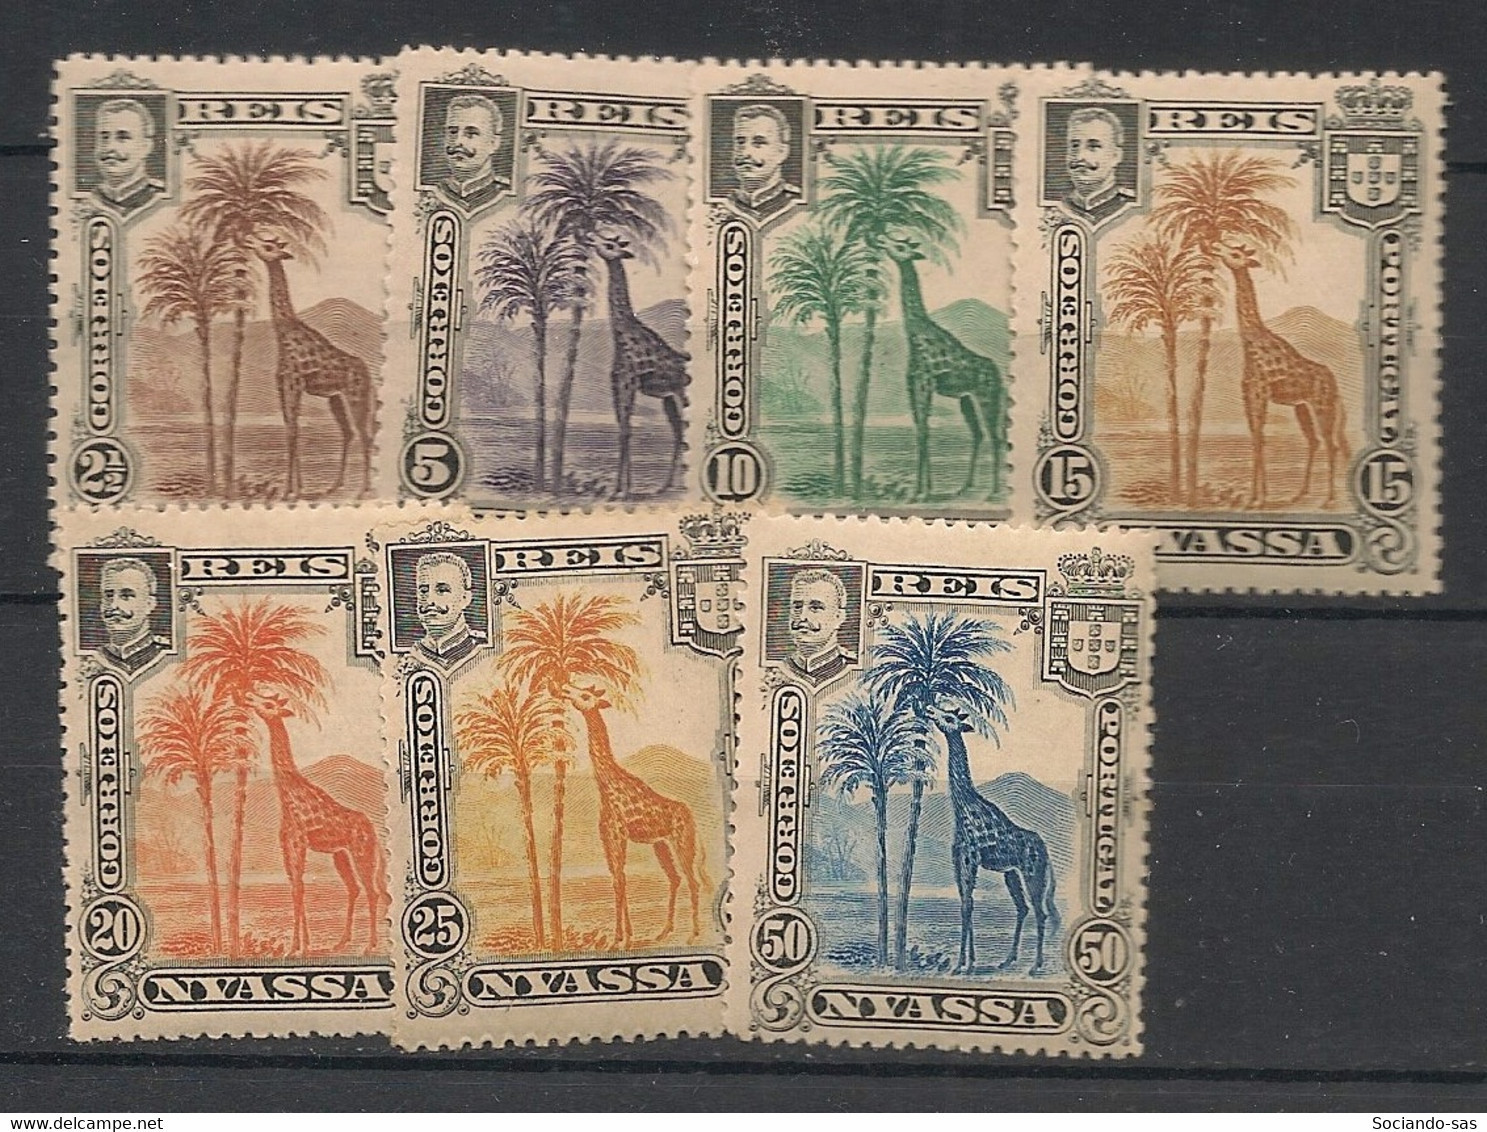 NYASSA - 1901 - N°YT. 27 à 33 - Girafes - Neuf Luxe ** / MNH / Postfrisch - Girafes